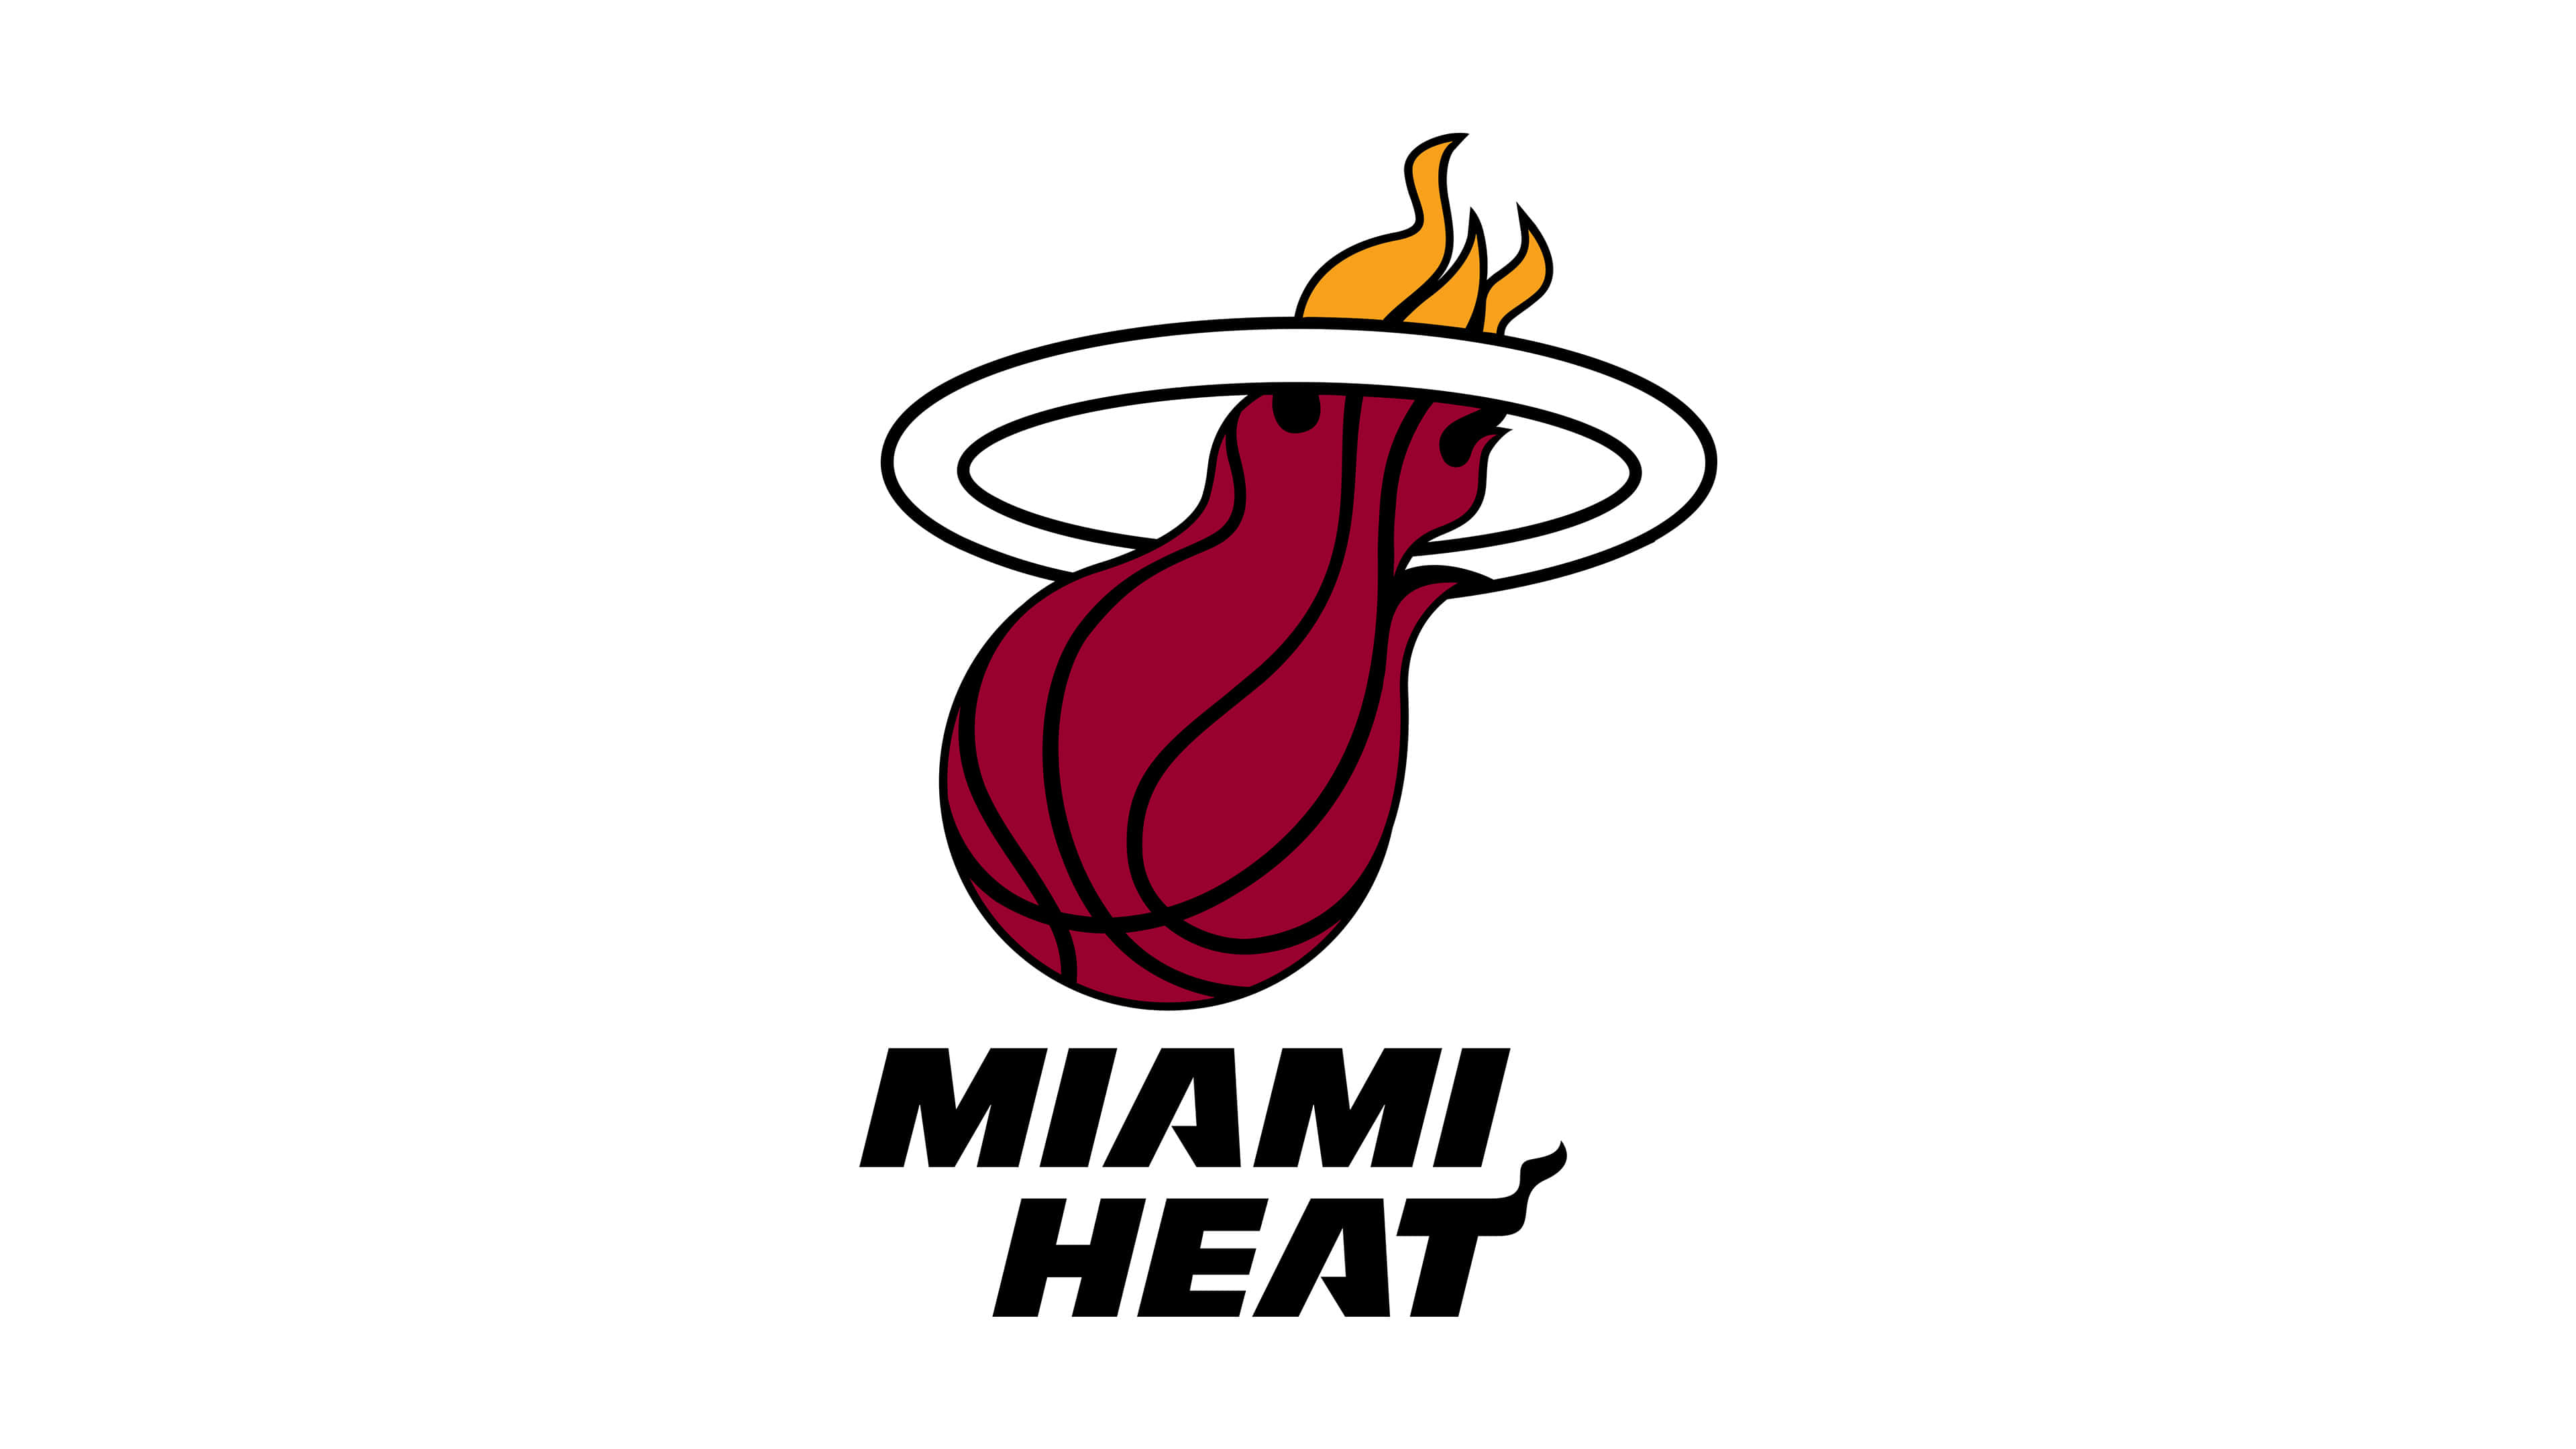 Miami Heat Logo Wallpapers Top Những Hình Ảnh Đẹp